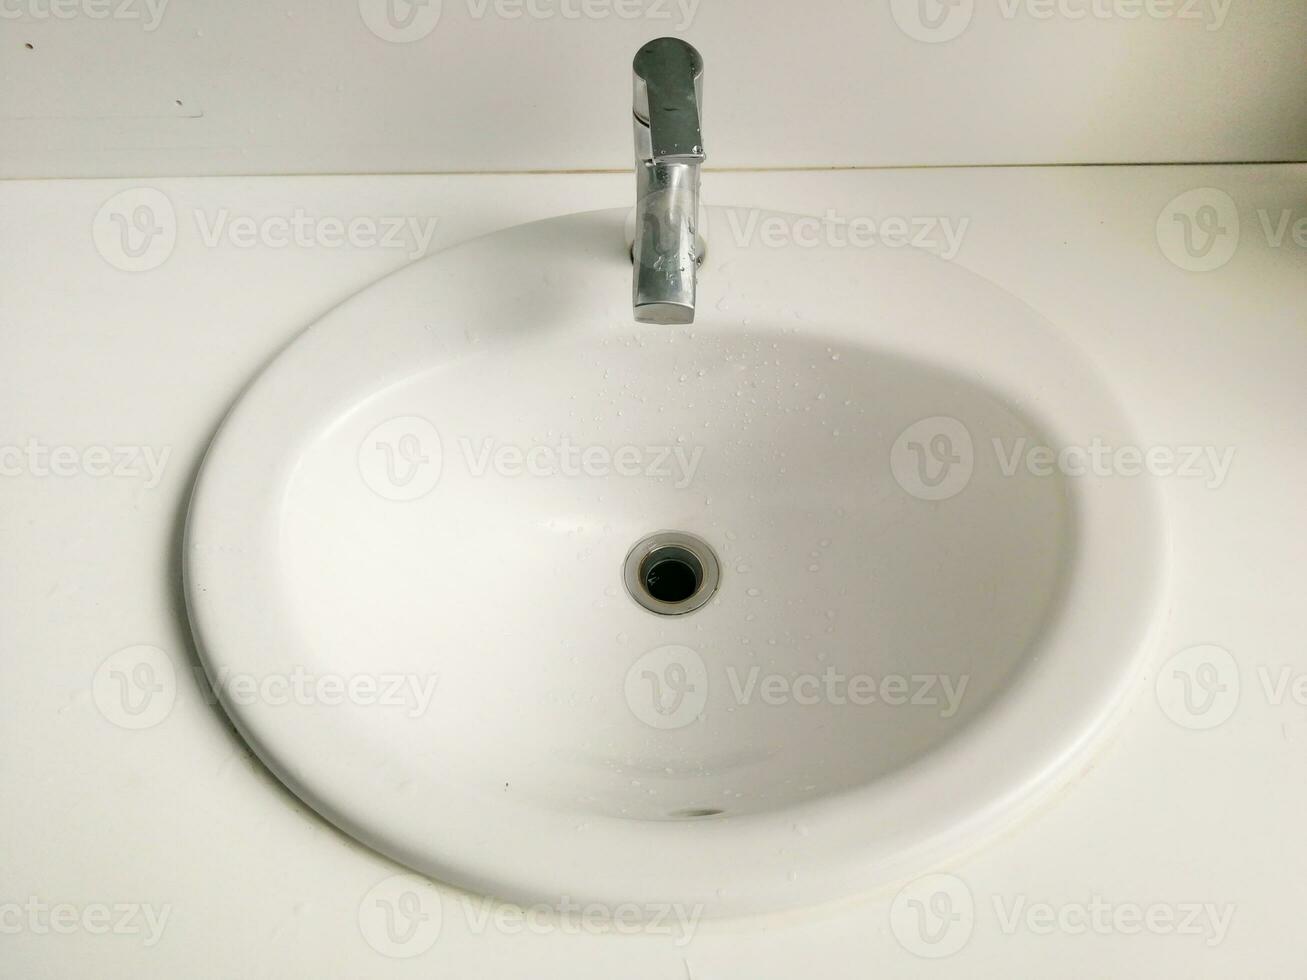 évier blanc et robinet argenté avec marques de gouttes d'eau, image ancienne et terne. photo